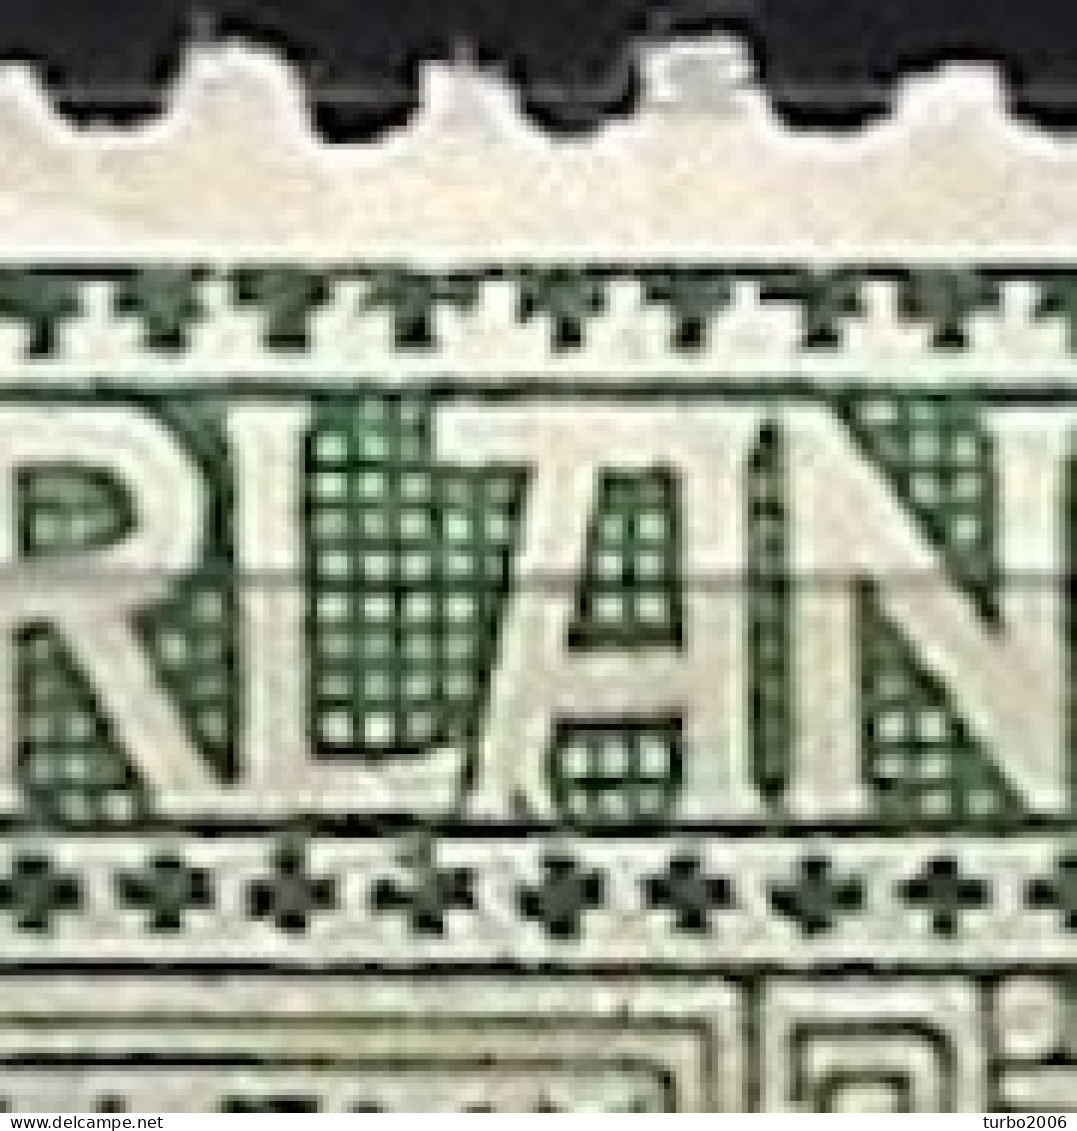 Plaatfout Groen Puntje In  De A Van NederlAnd (zegel 27) In 1913 Jubileumzegels 2½ Cent Groen NVPH 90 PM Leidraad 1 - Variétés Et Curiosités